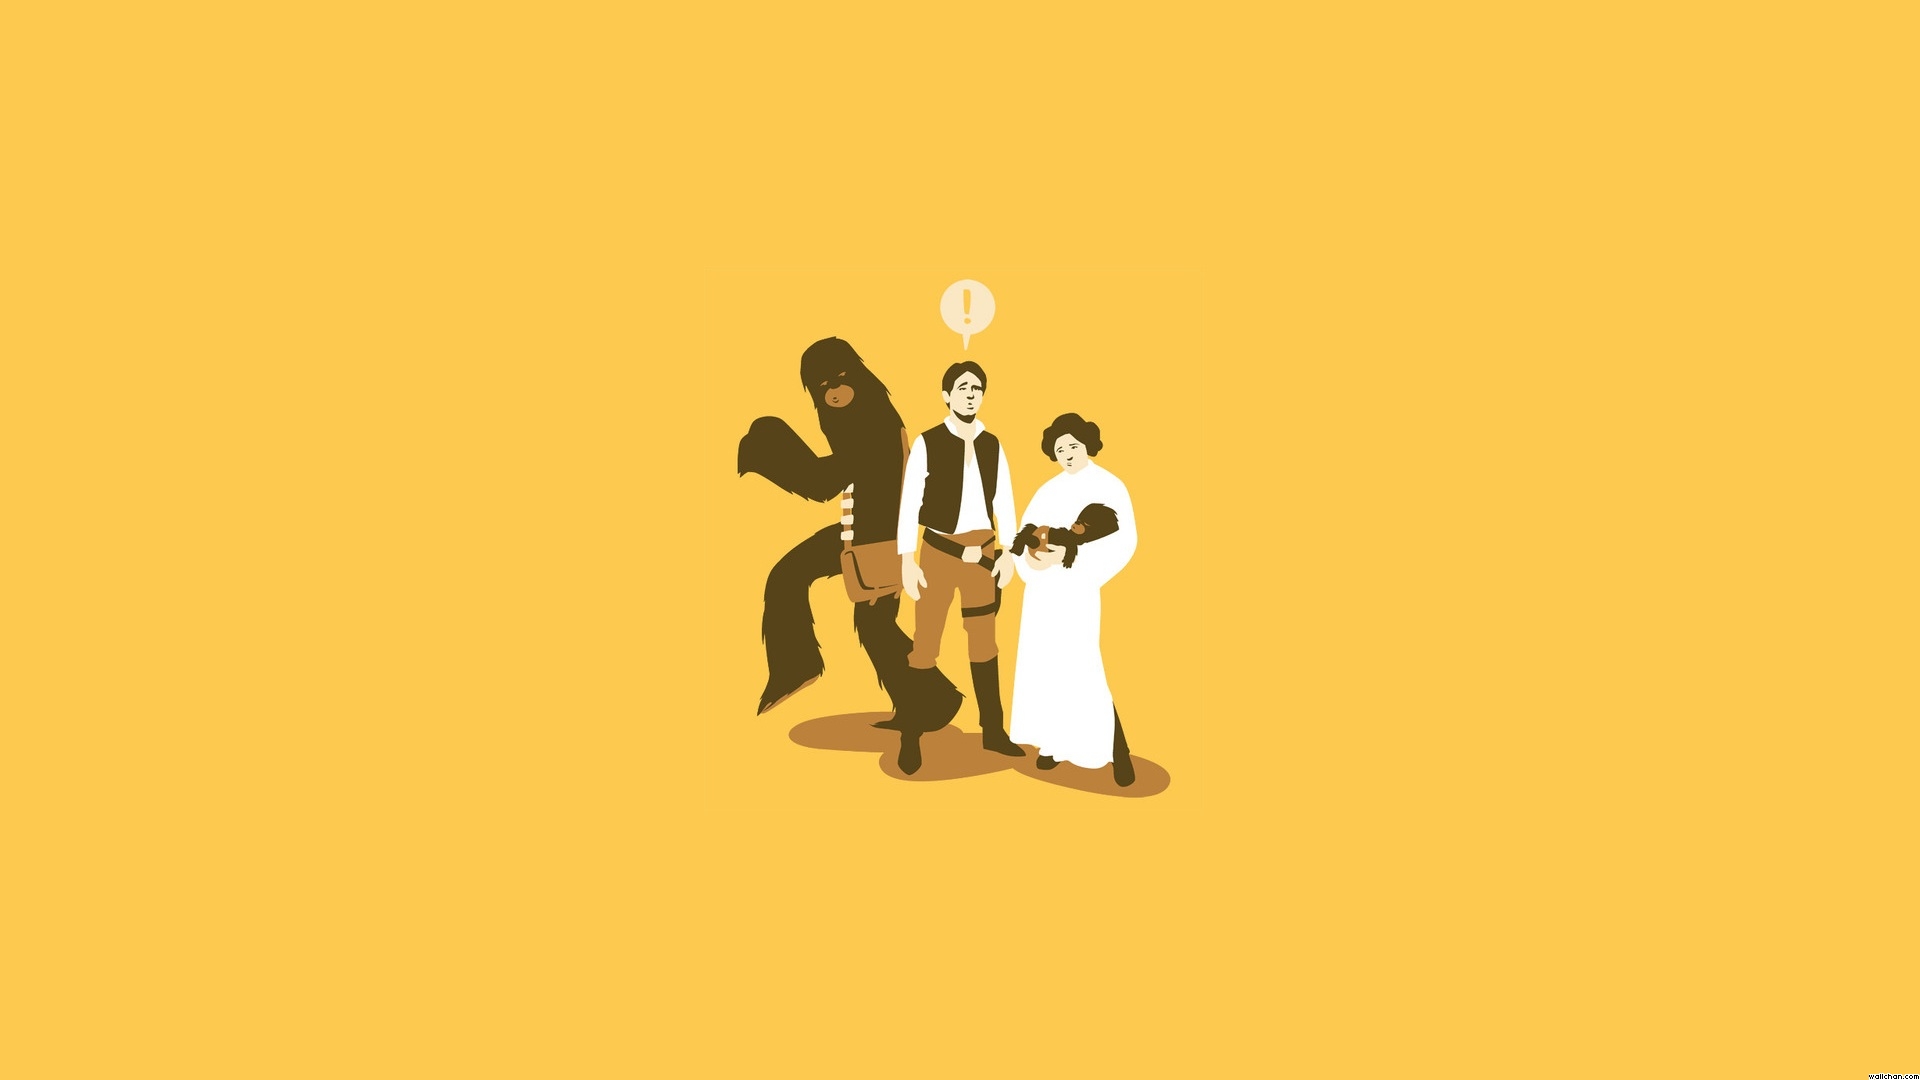 72+] Funny Star Wars Wallpaper - WallpaperSafari